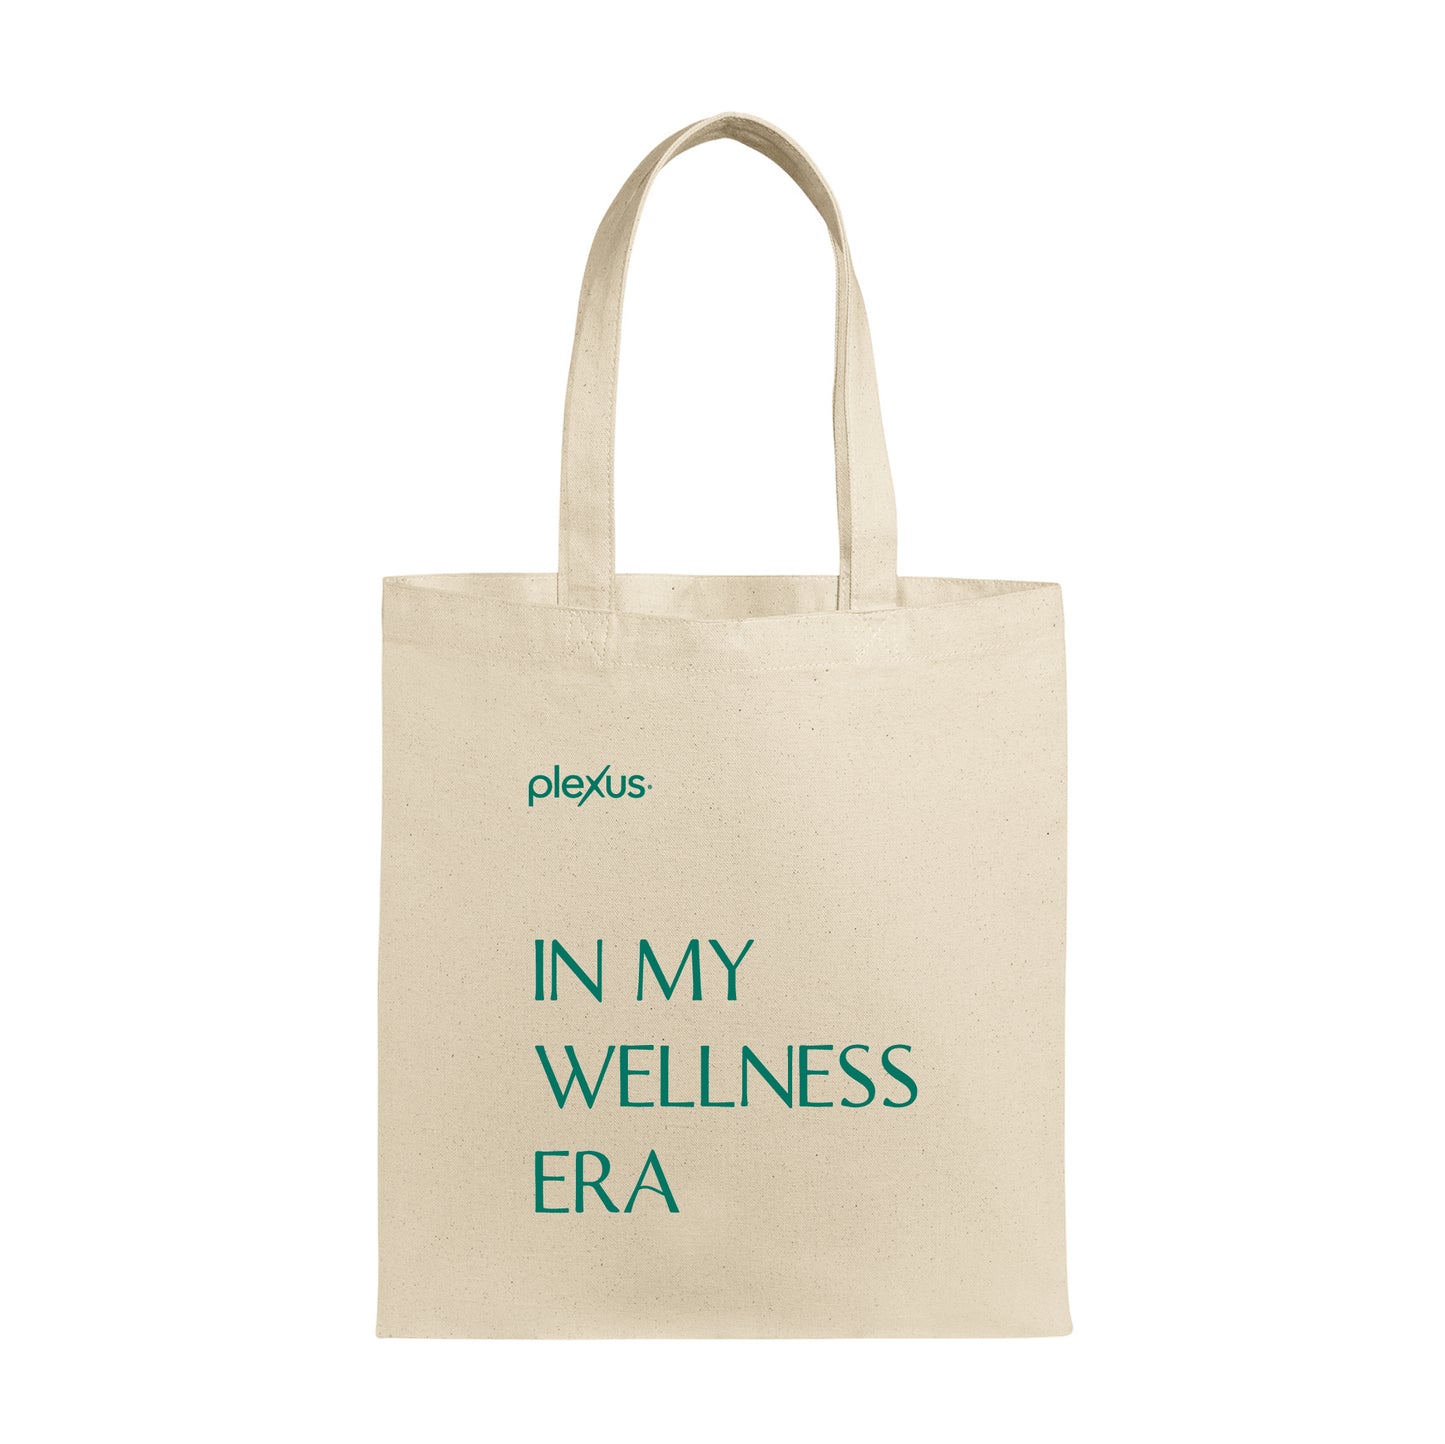 Wellness Era Tote Bag